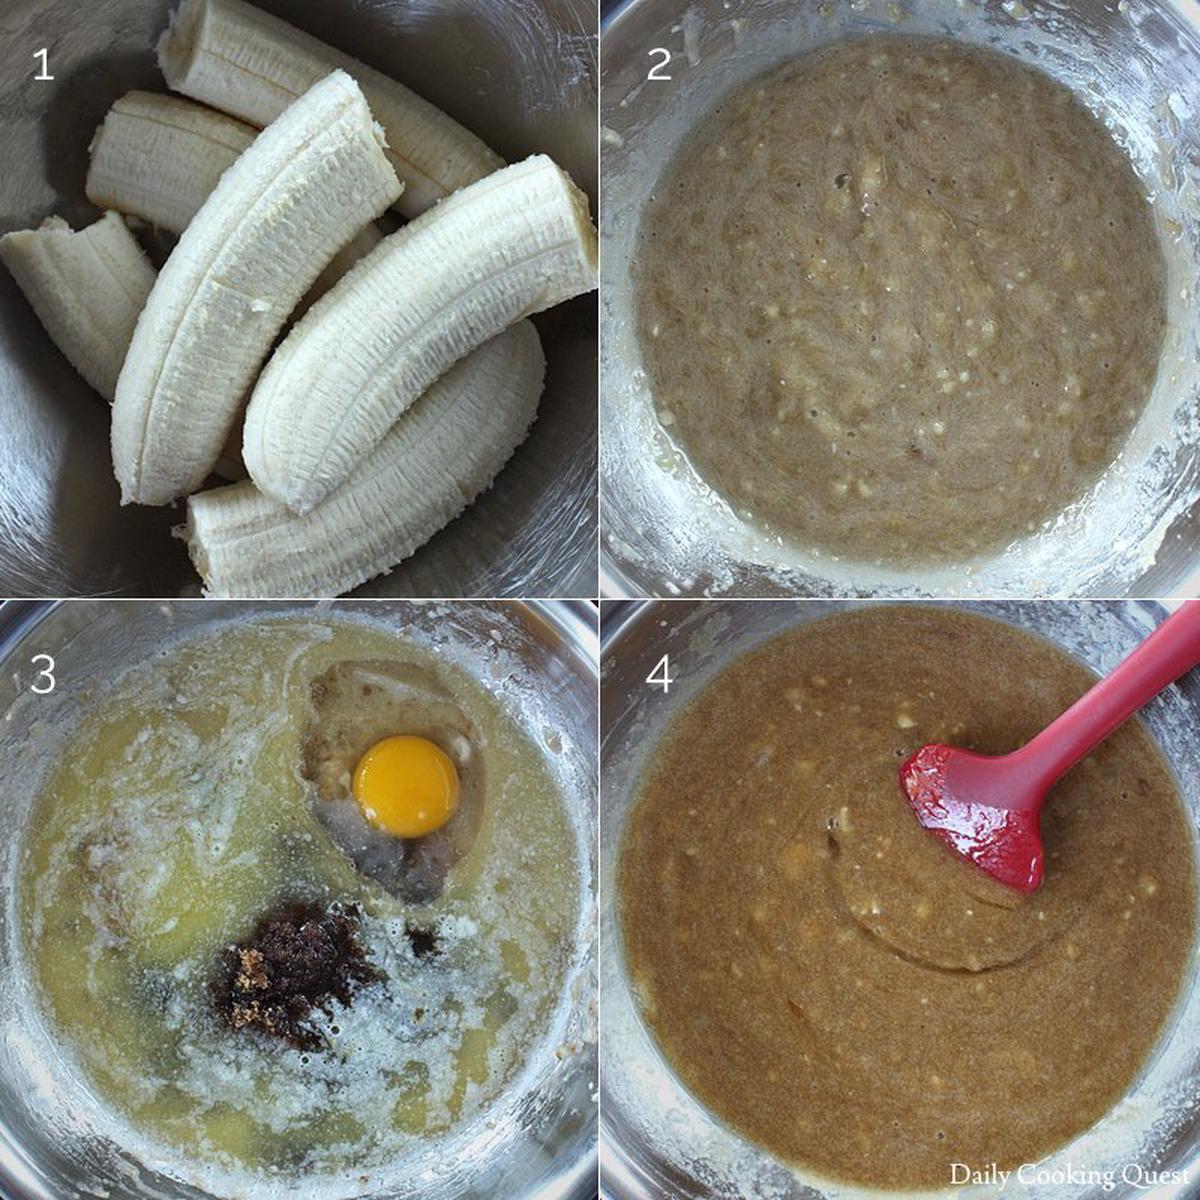 1. Peel bananas; 2. Mash bananas; 3. Add melted butter, brown sugar, egg, and vanilla extract; 4. Mix.